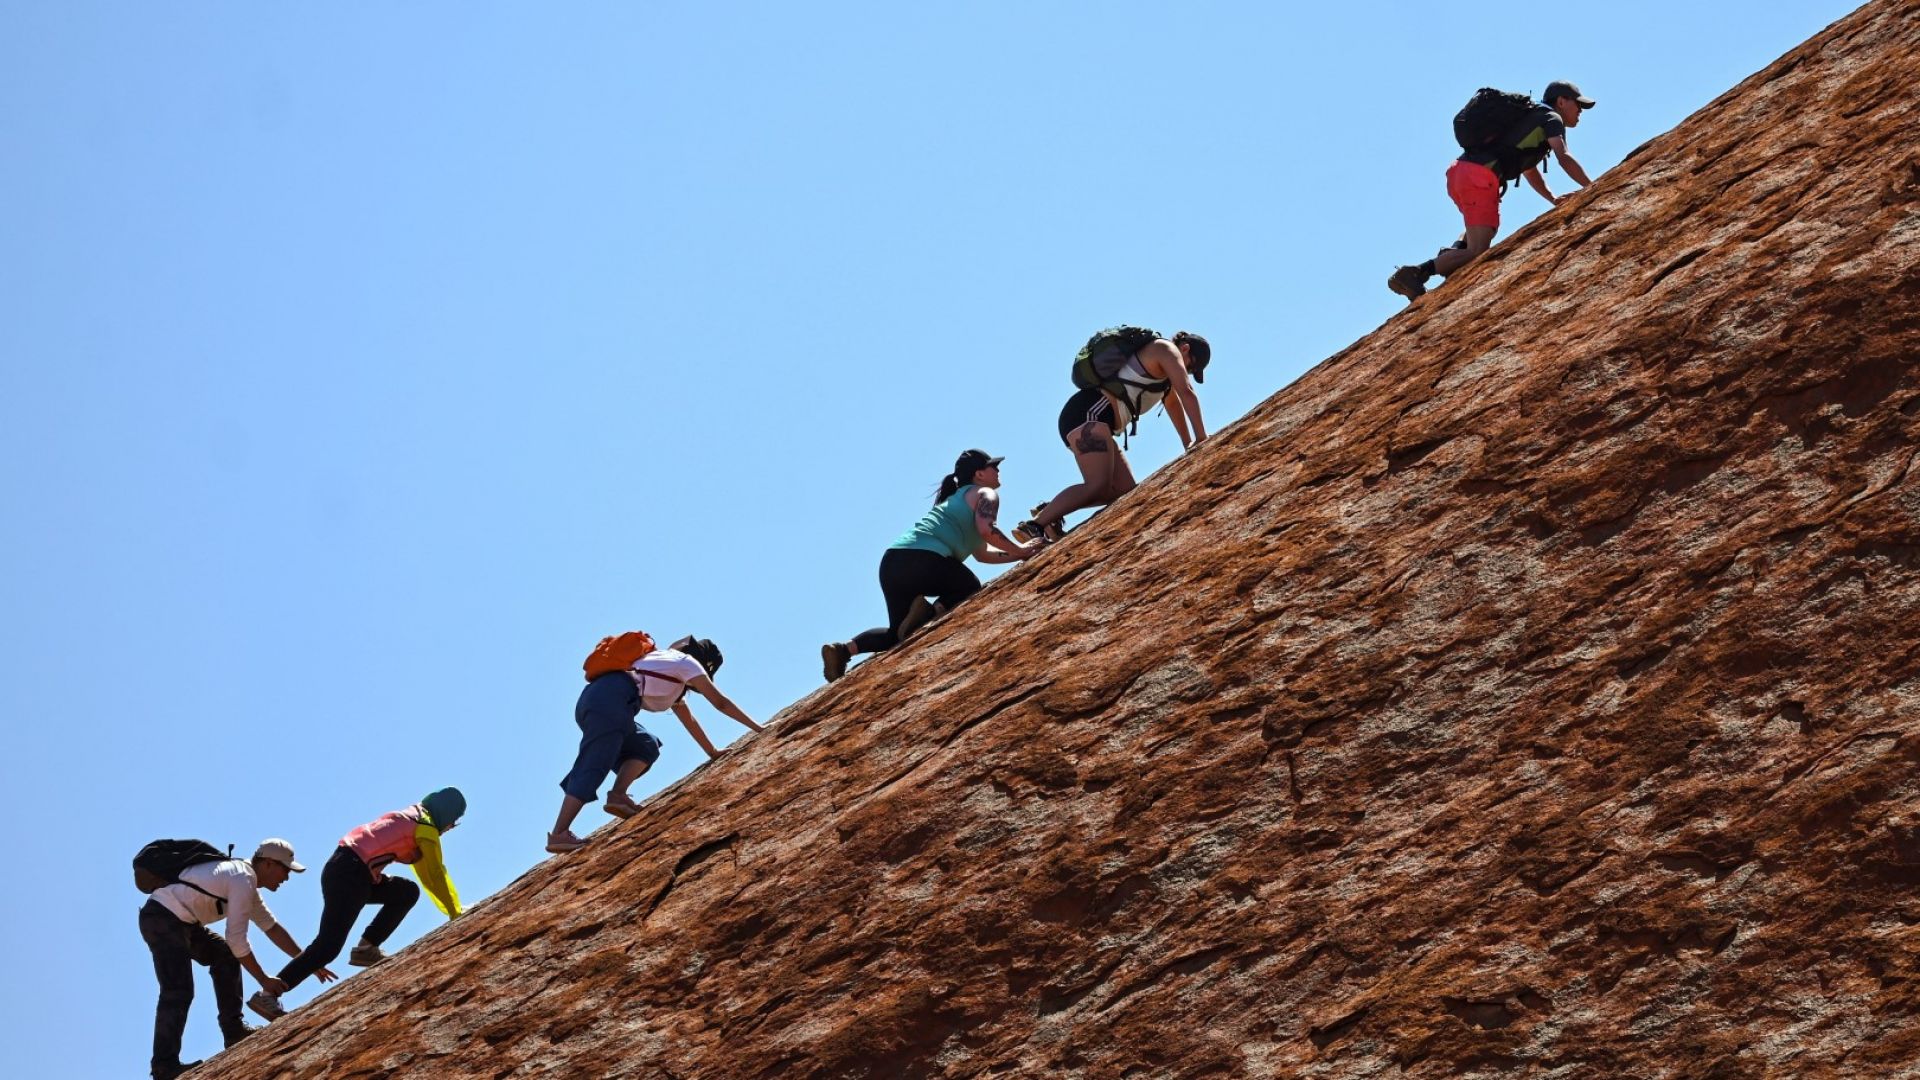 Стотици хора се изкачиха за последен път по скалния монолит Улуру